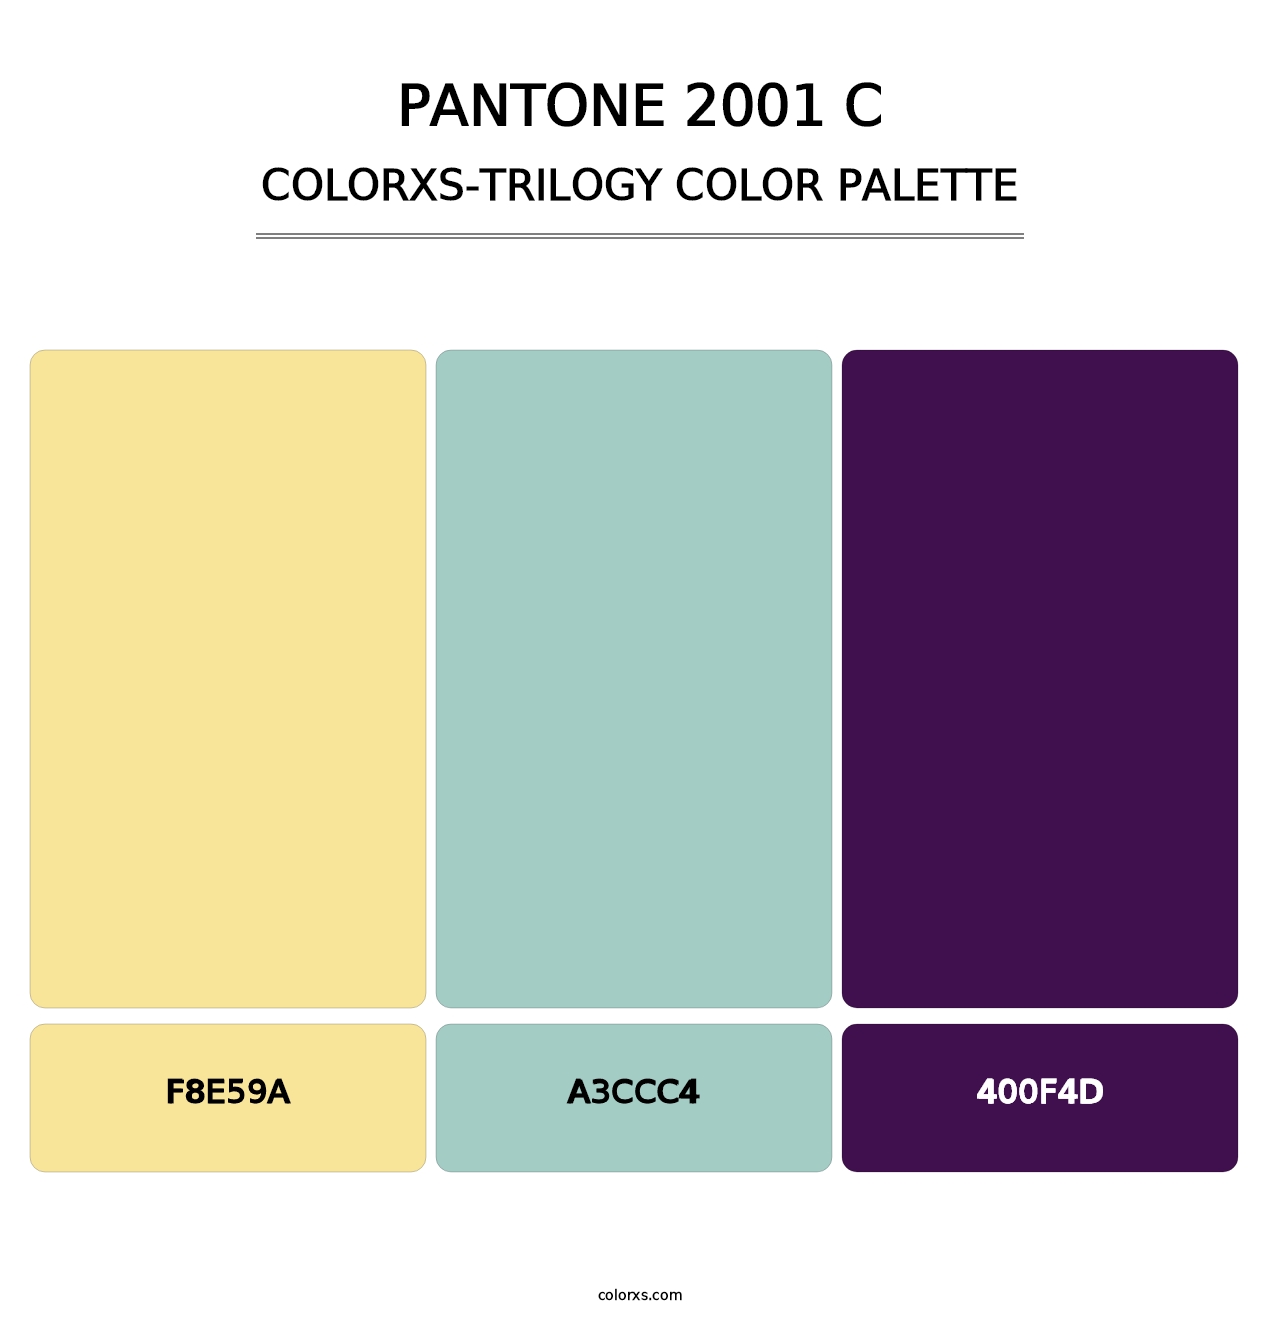 PANTONE 2001 C - Colorxs Trilogy Palette